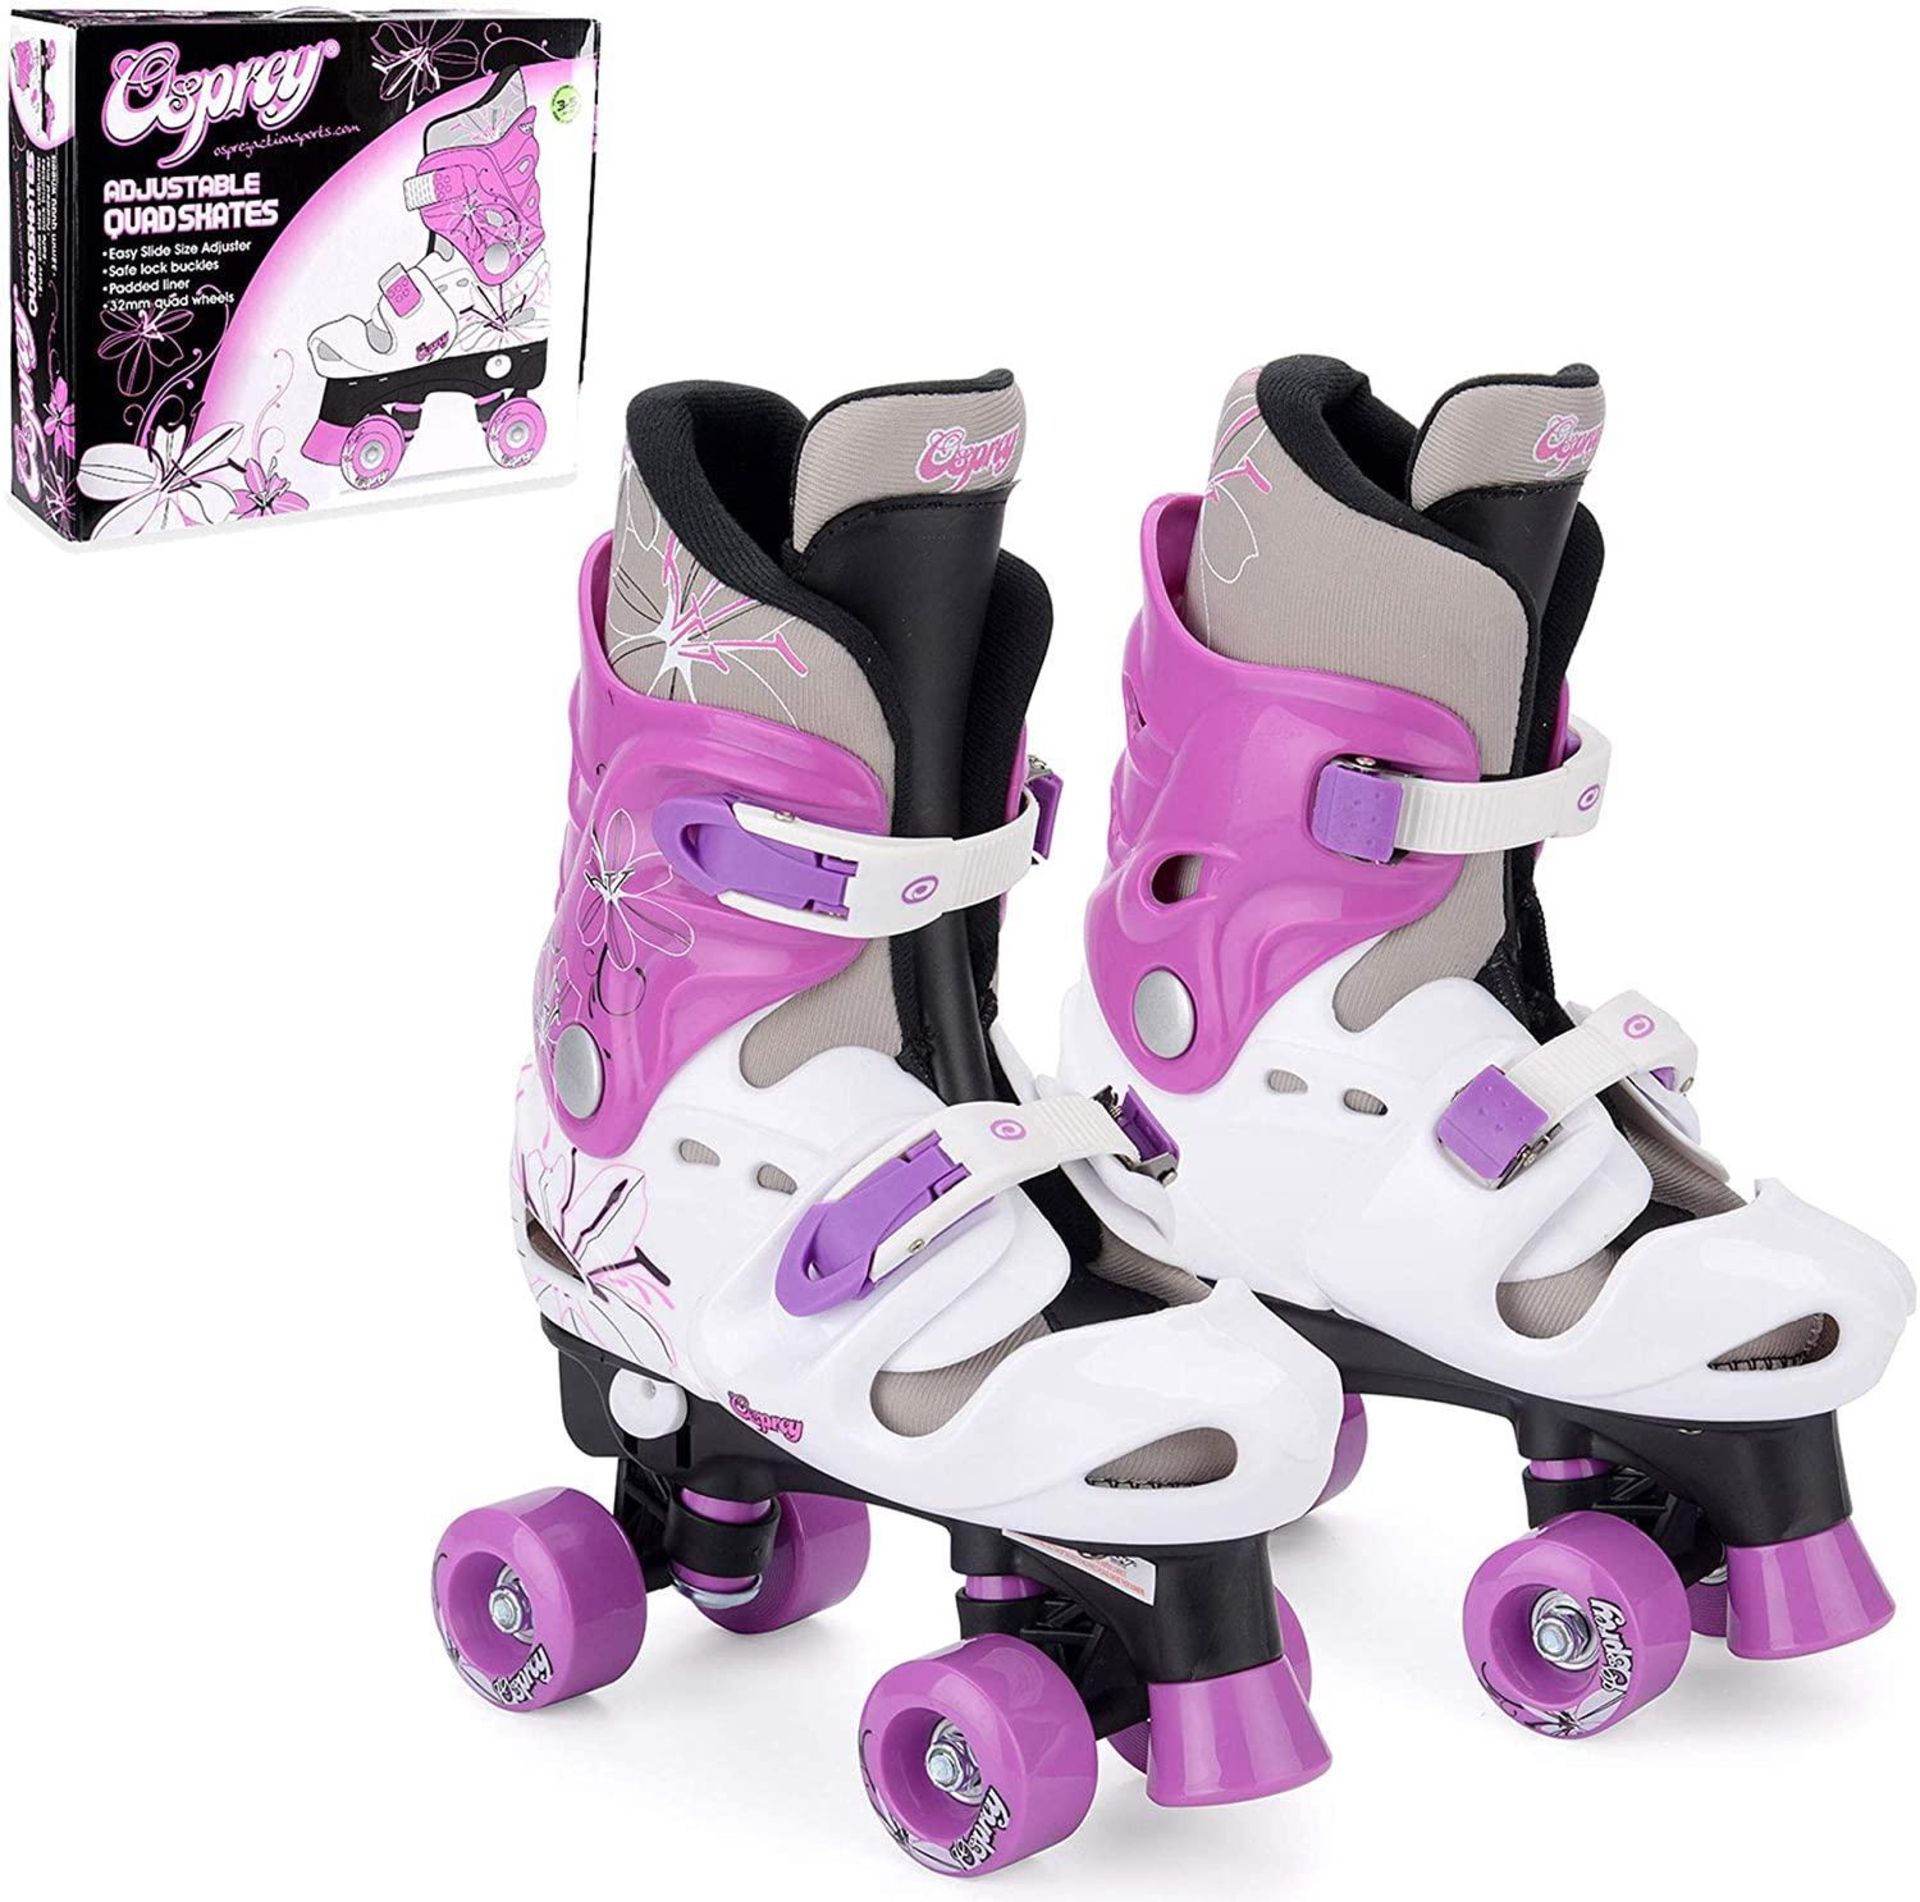 Osprey Kids Roller Skates - Adjustable Roller Skates for Girls (Purple)